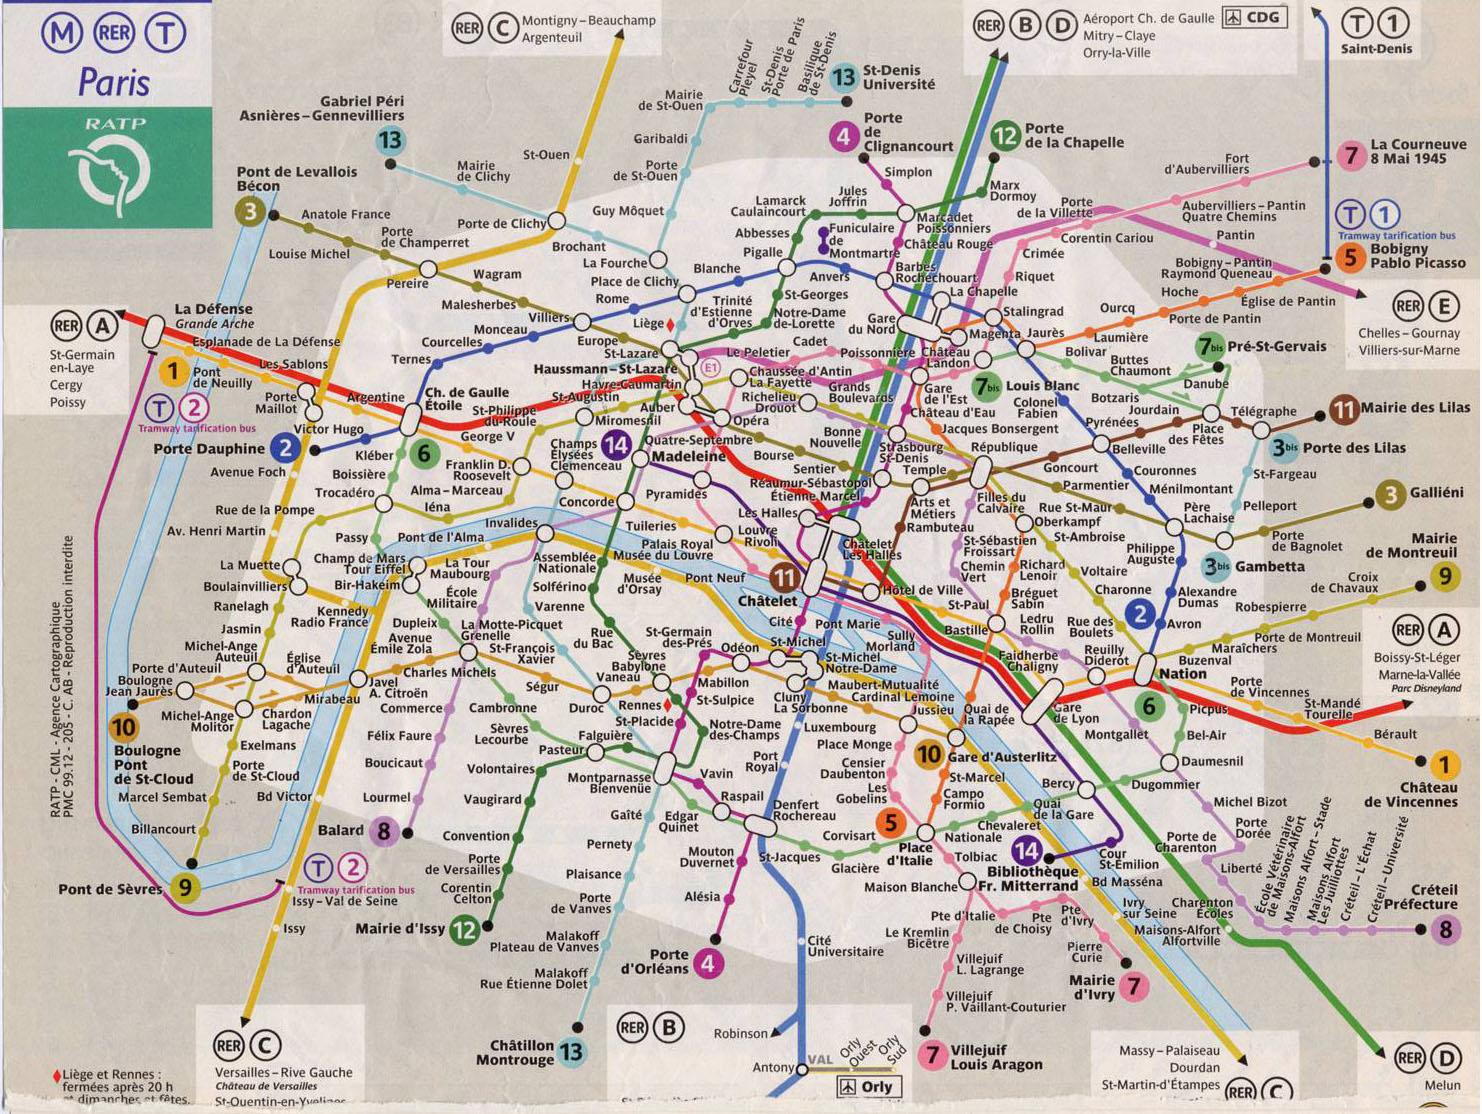 Paris metro train map - Paris train line map (Île-de-France - France)